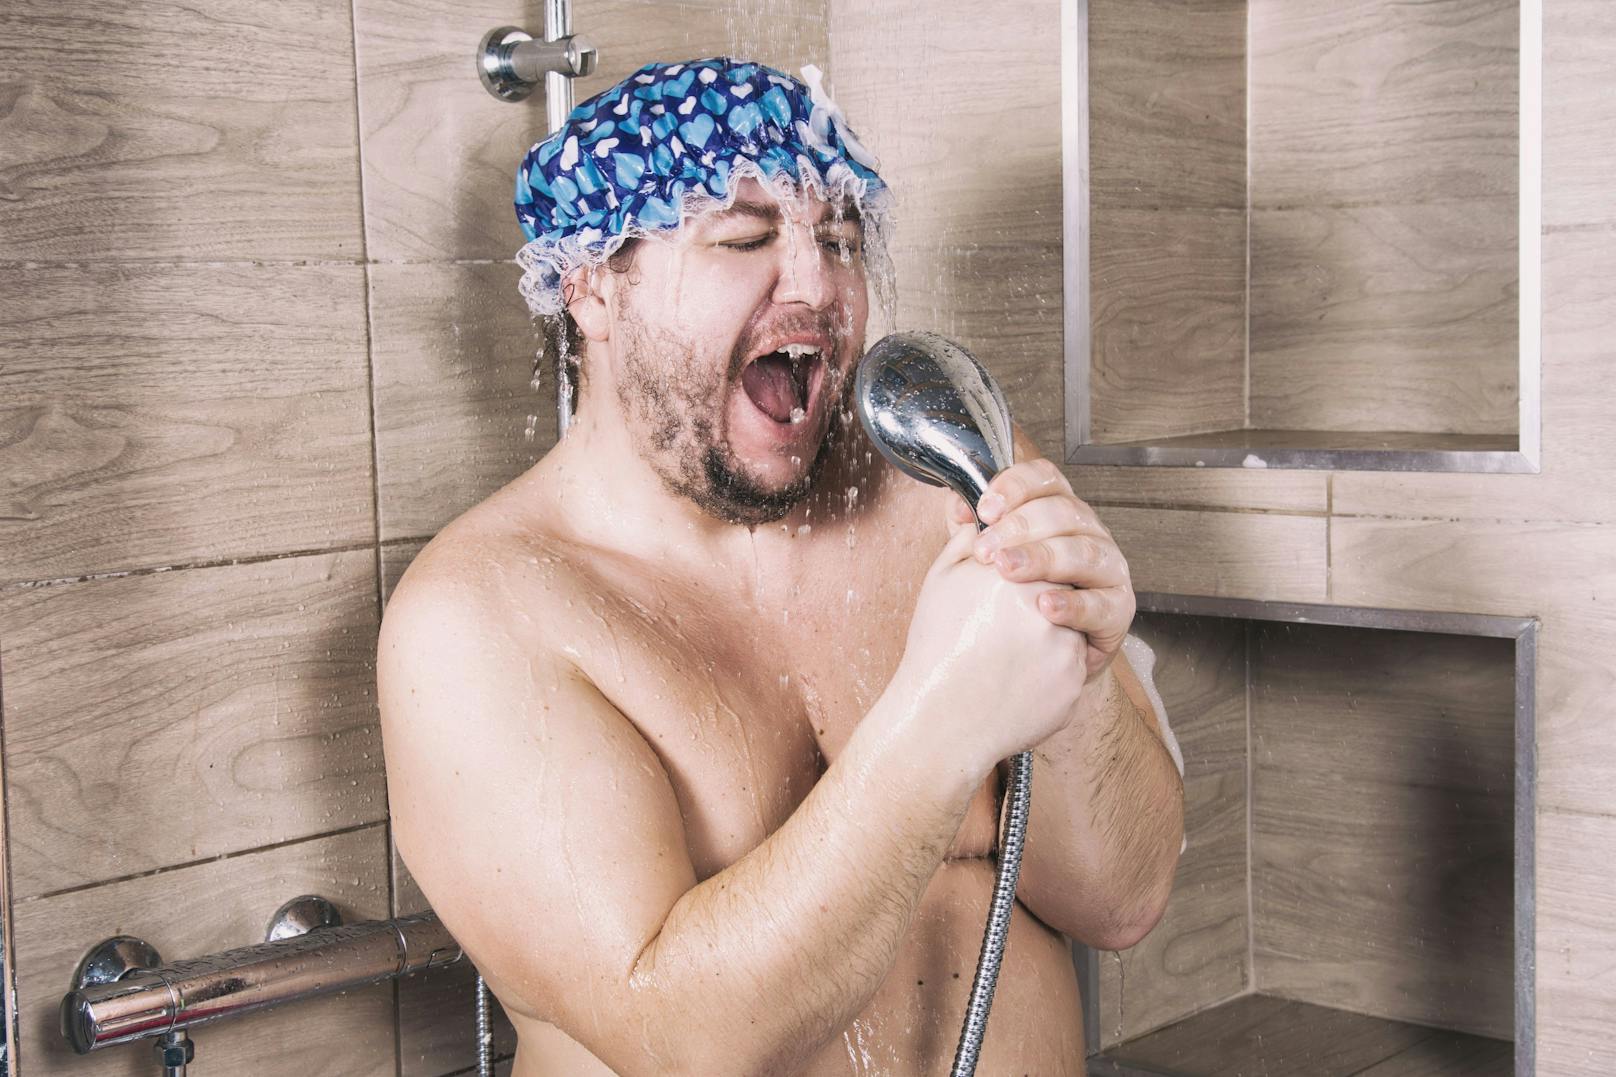 Die tägliche kalte Dusche hat laut Public-Health-Experten Hans-Peter Hutter nur Vorteile.